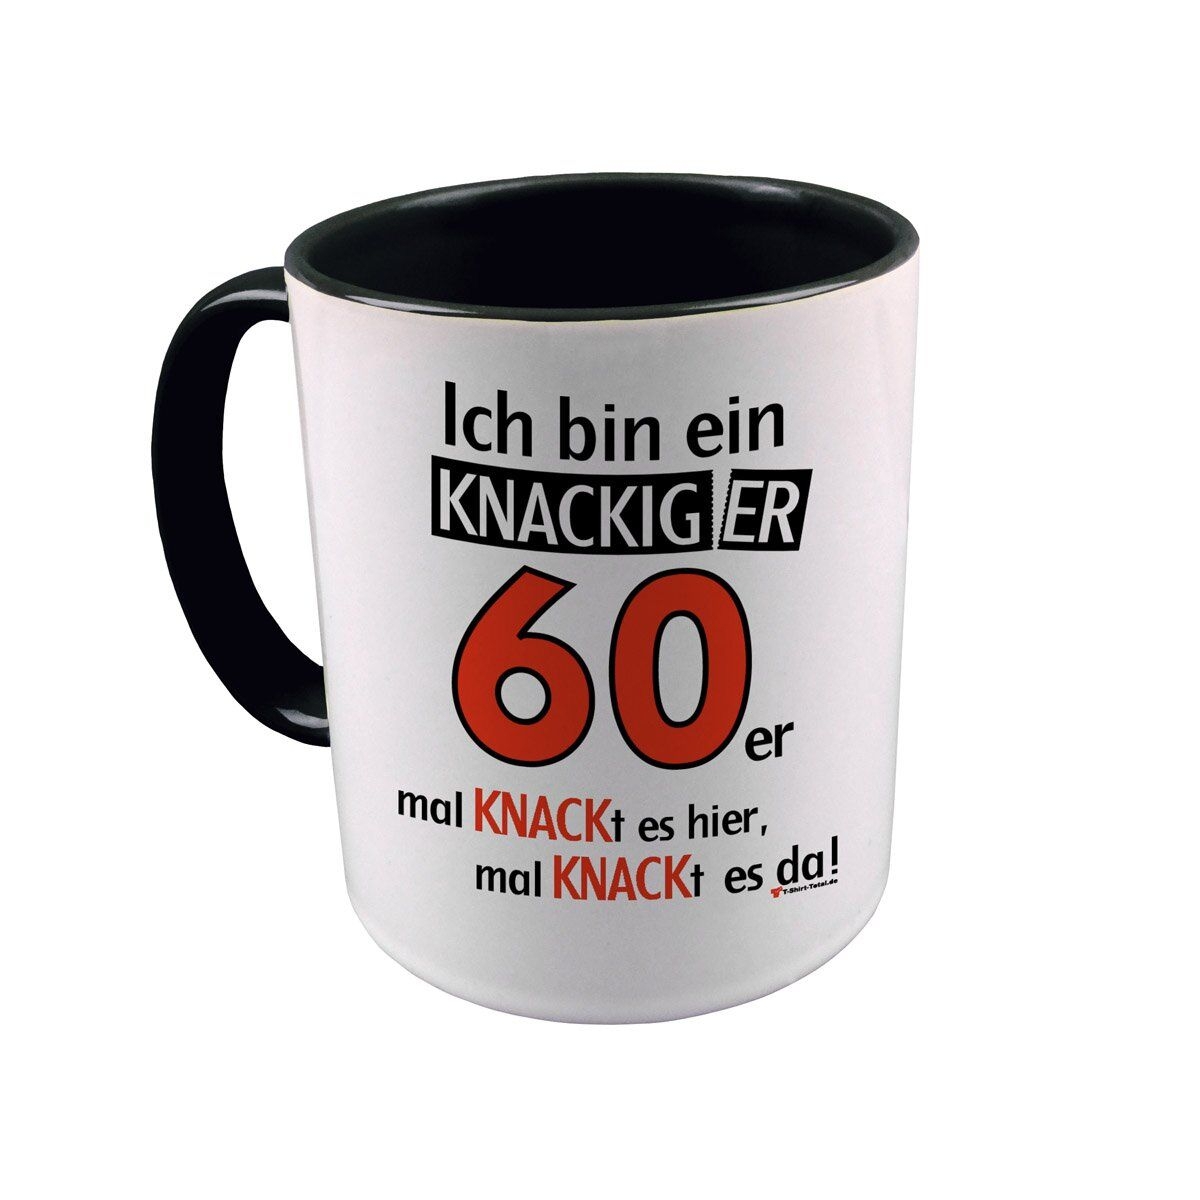 Knackiger 60er Tasse schwarz / weiß